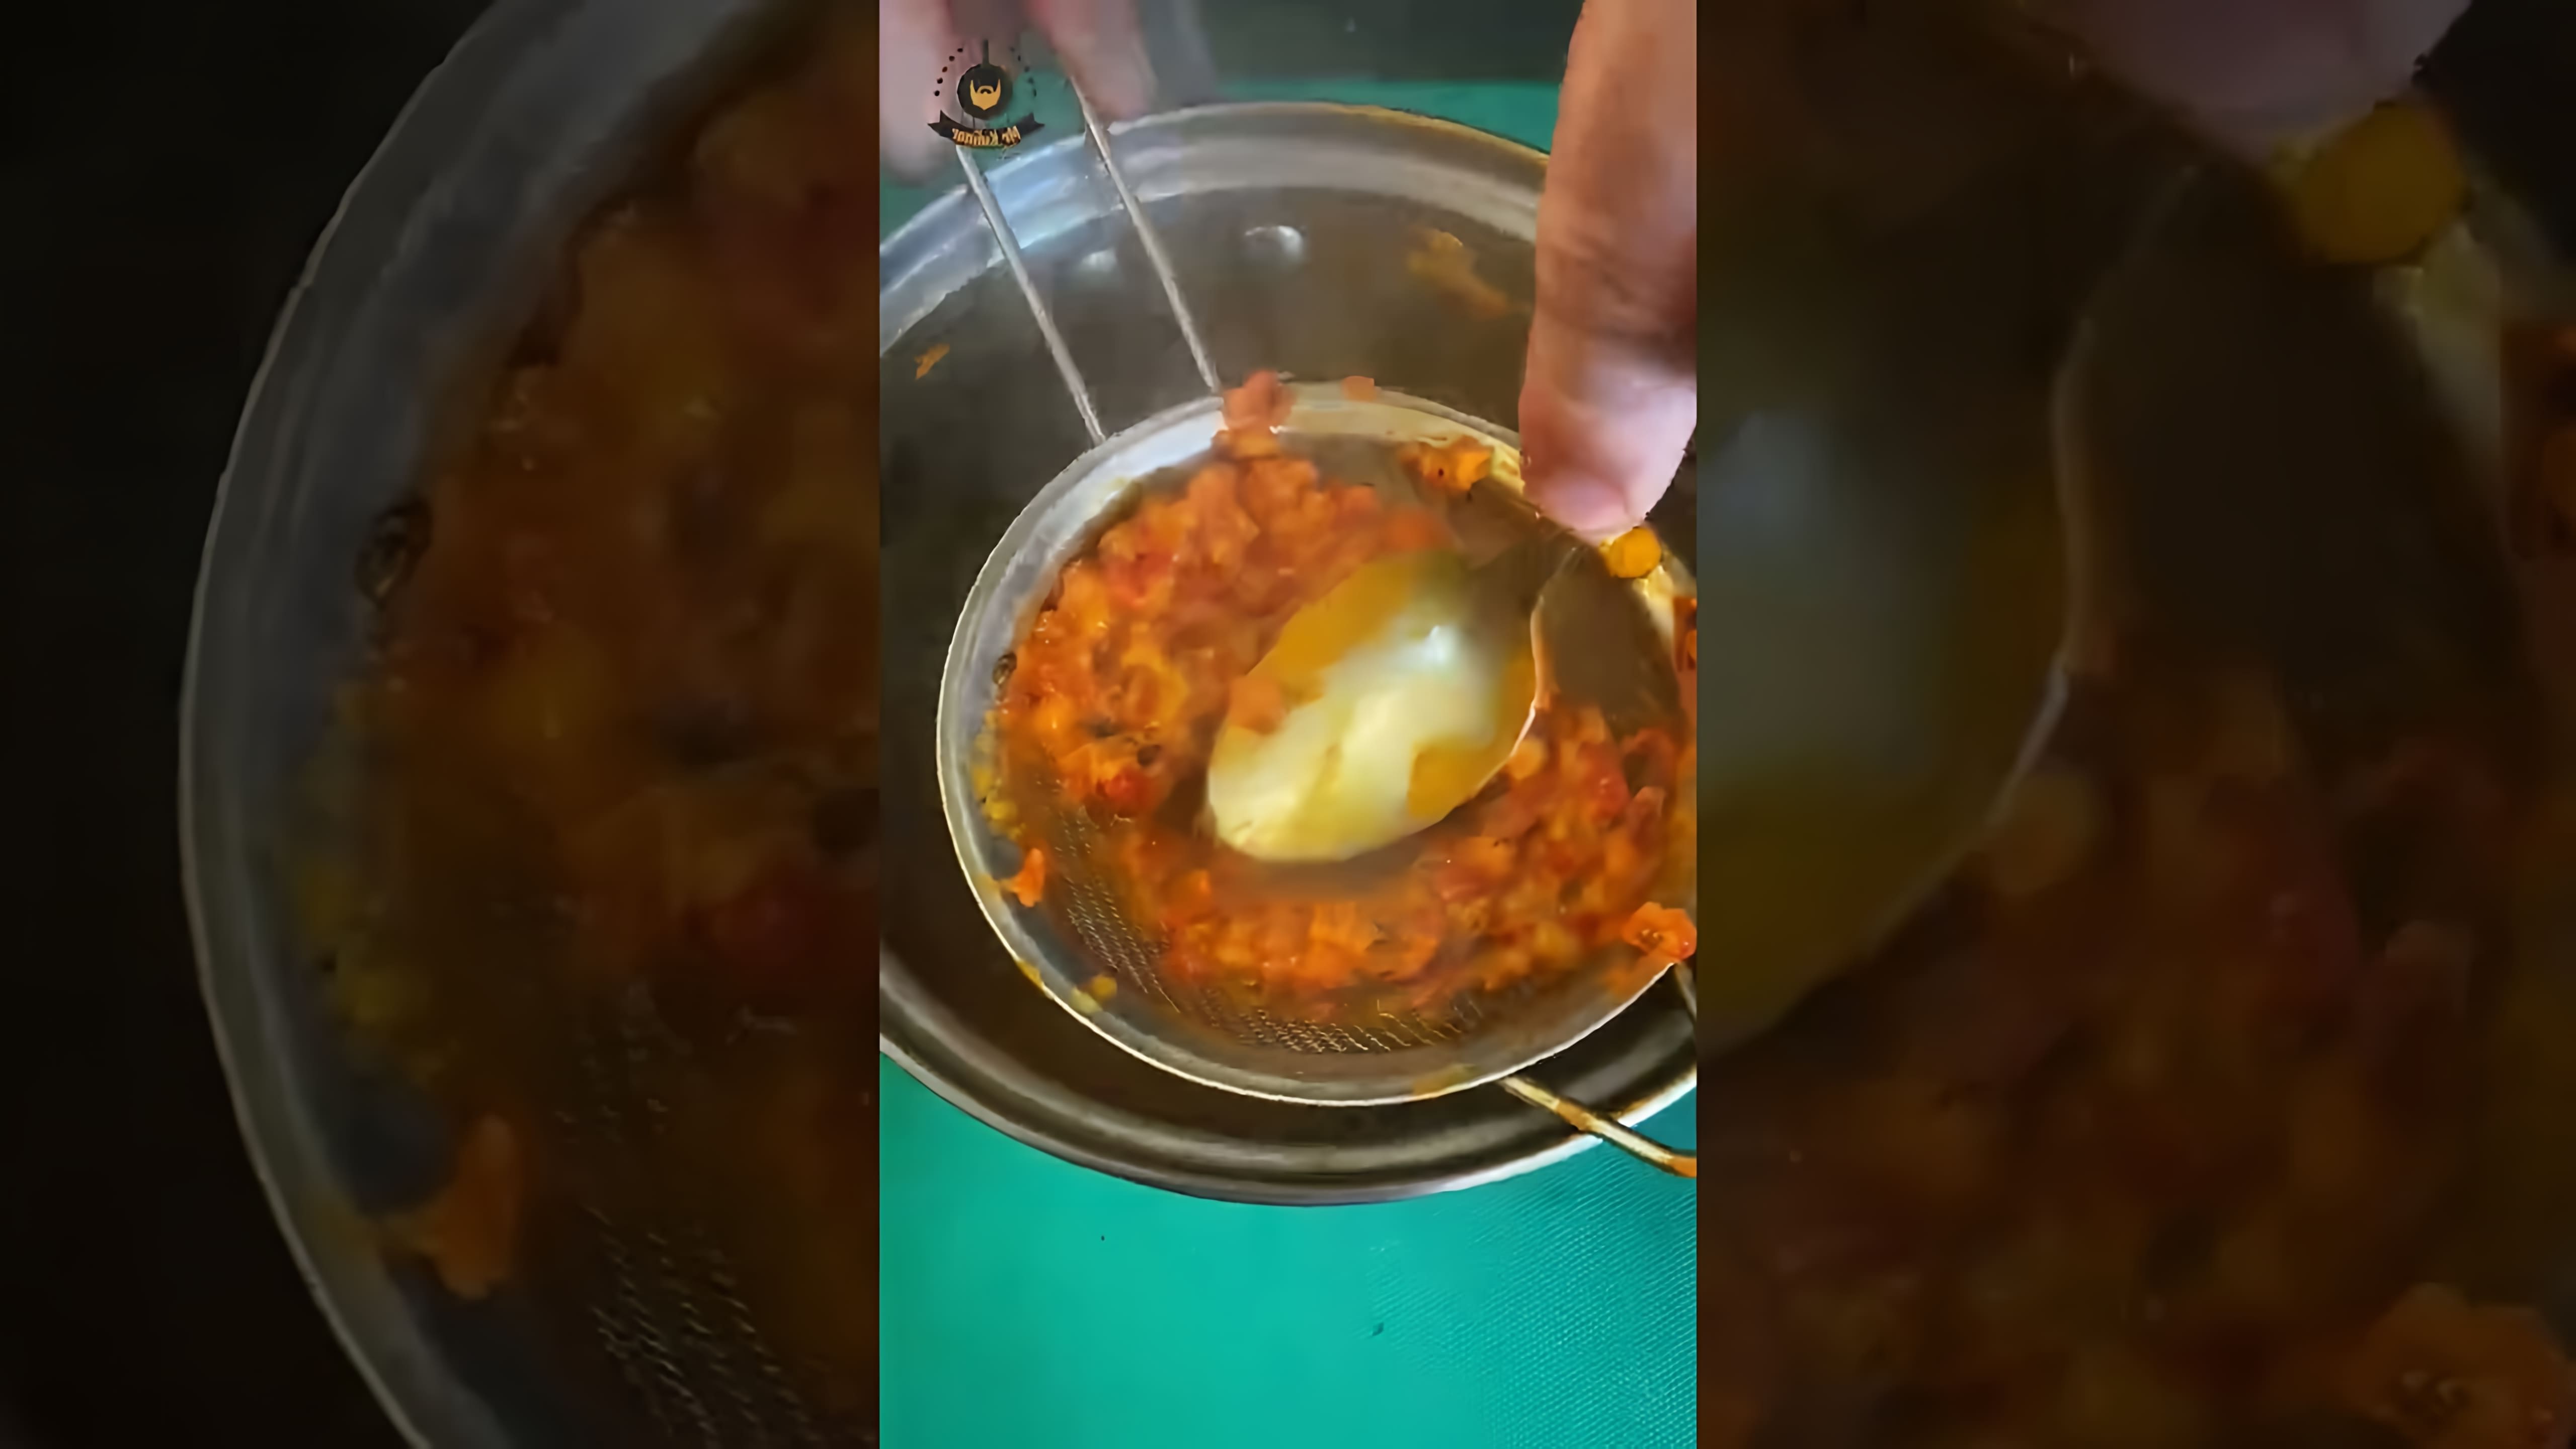 В этом видео демонстрируется процесс приготовления облепихового соуса к мясу